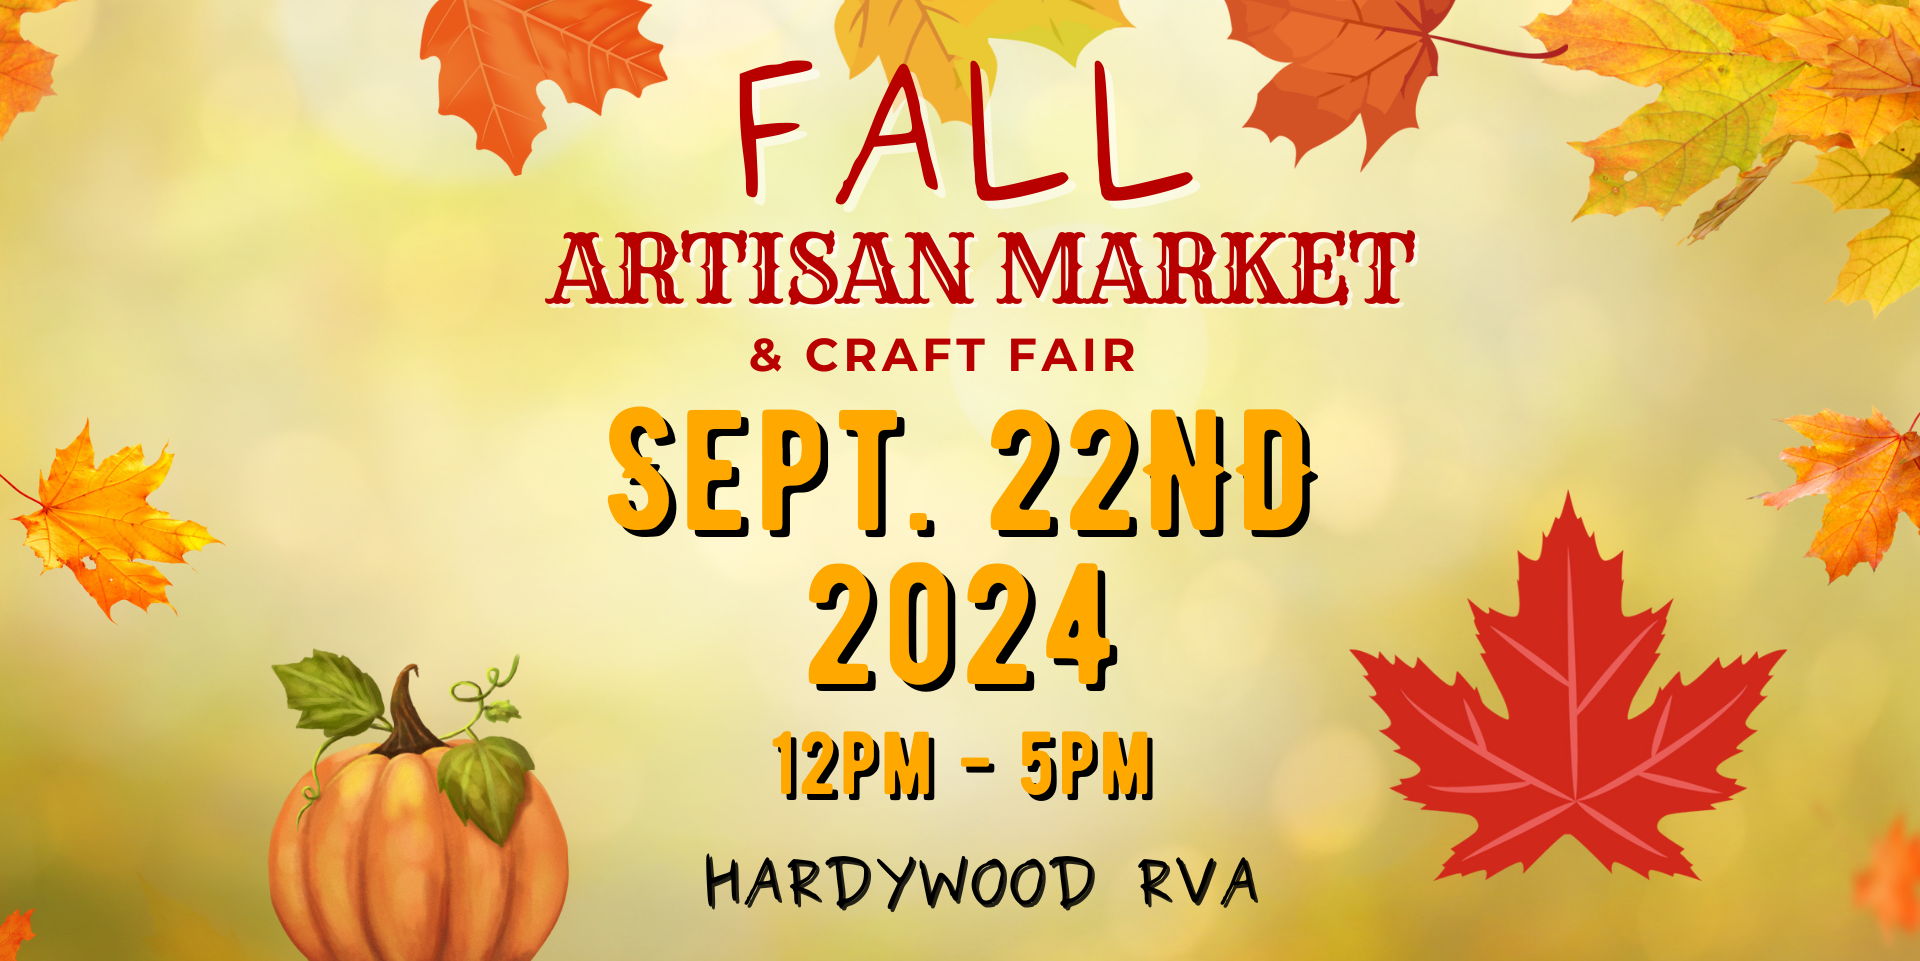 Fall Artisan Market & Craft Fair at Hardywood promotional image